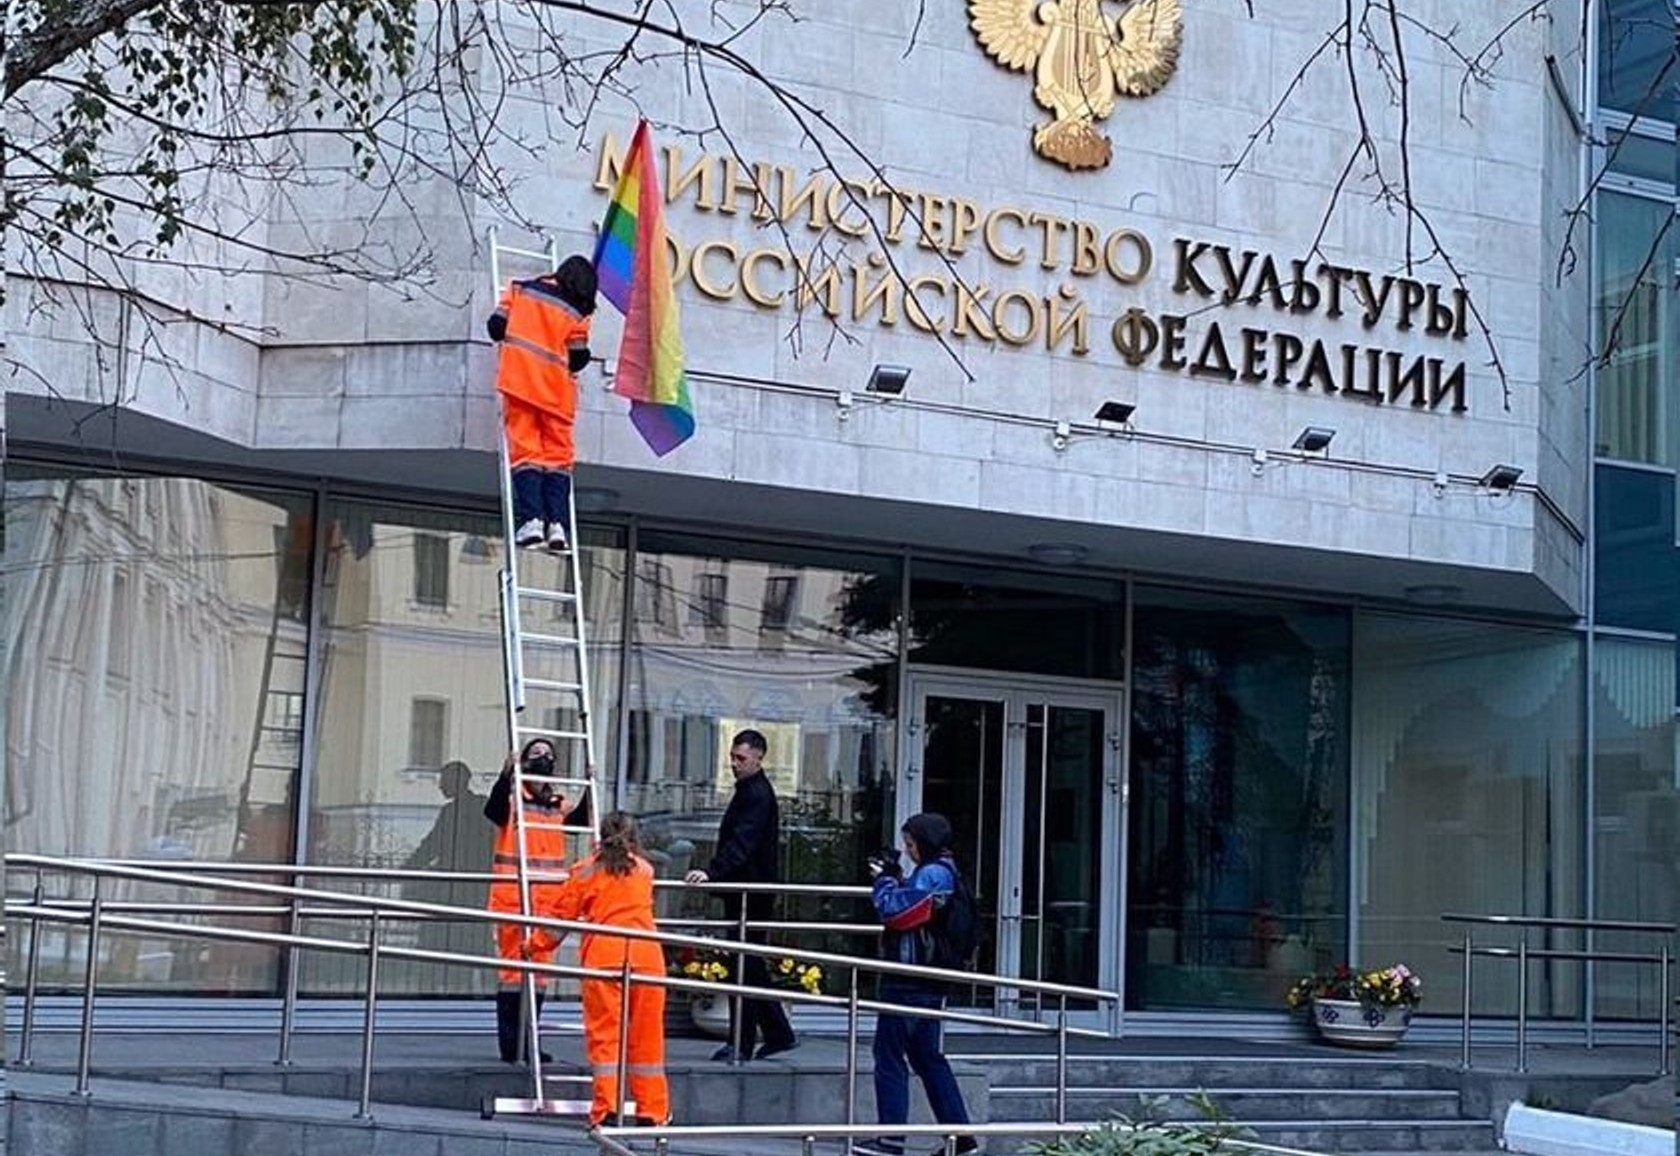 У Москві затримали активістку Марію Тимофєєву. Вона брала участь в акції Pussy Riot проти гомофобії